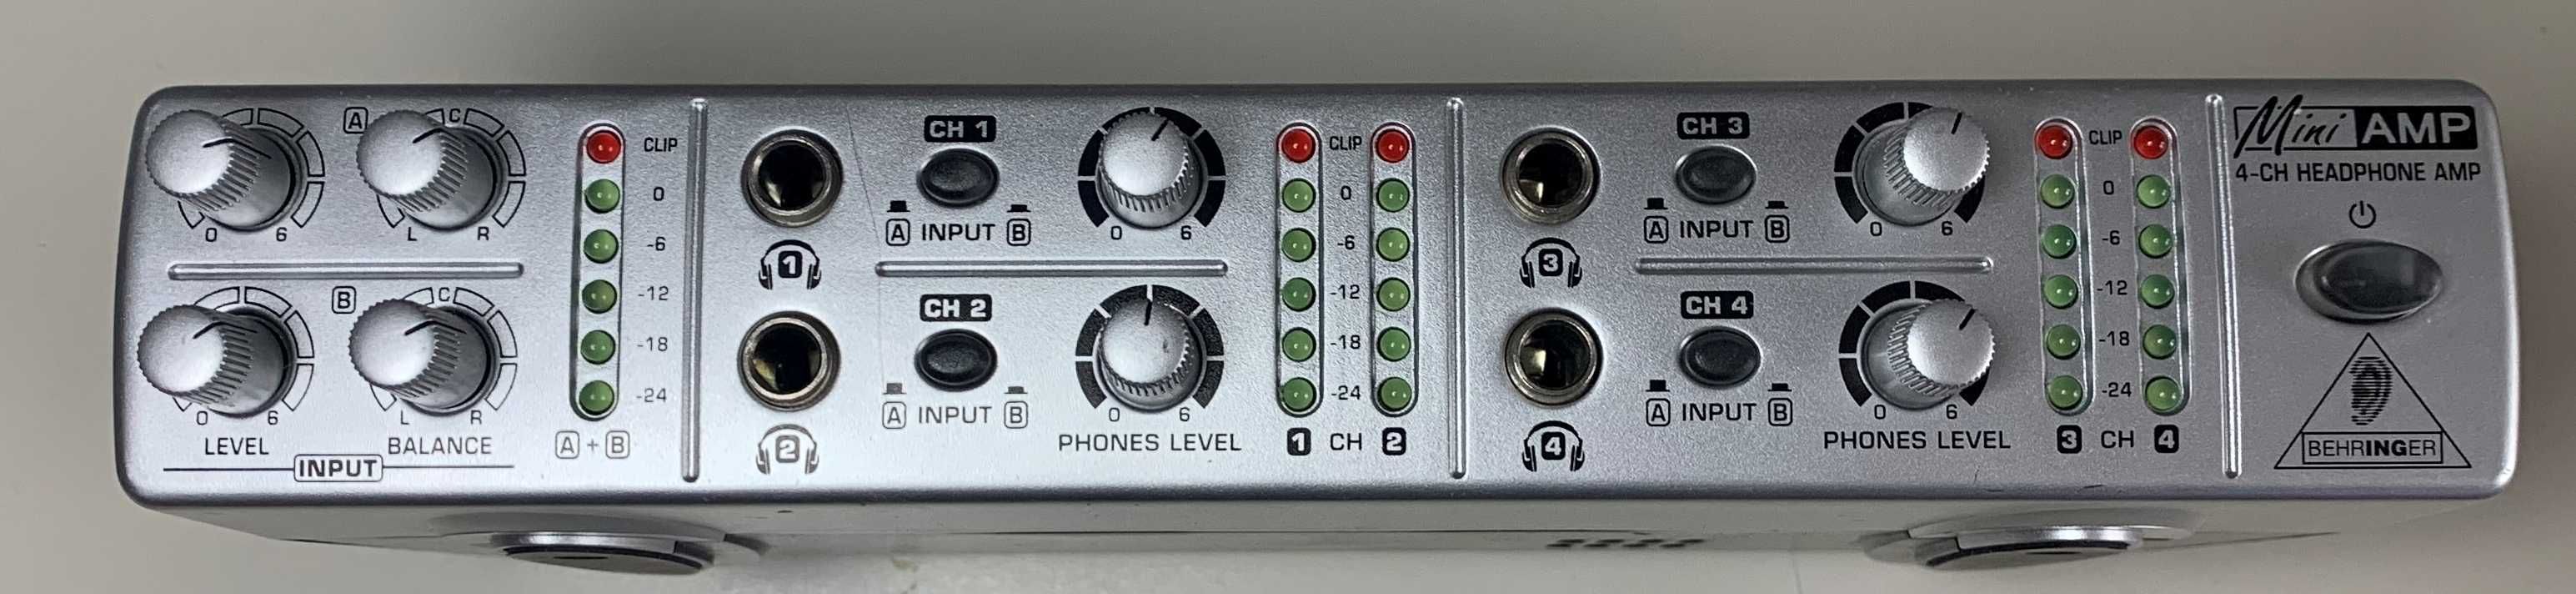 BEHRINGER AMP800 4-CH Headphone Amp wzmacniacz słuchawkowy